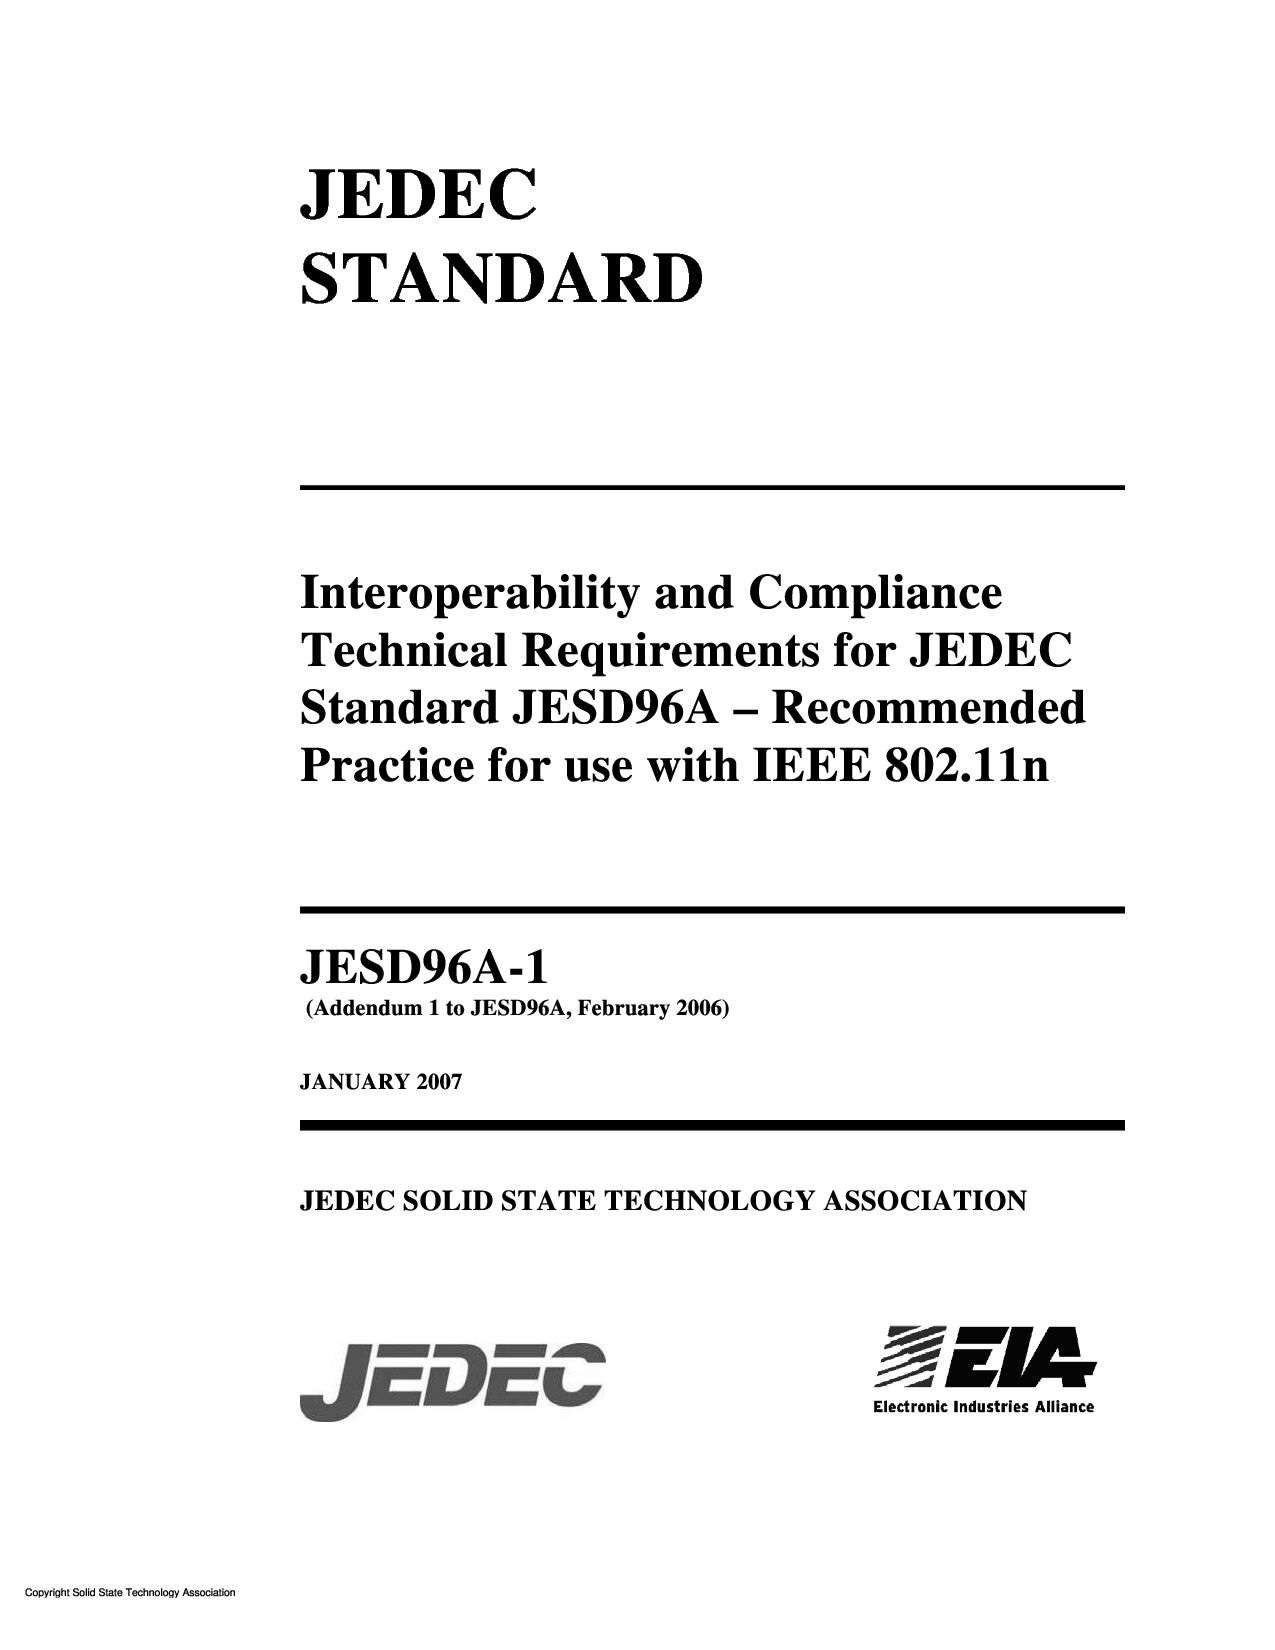 JEDEC JESD96A-1-2007